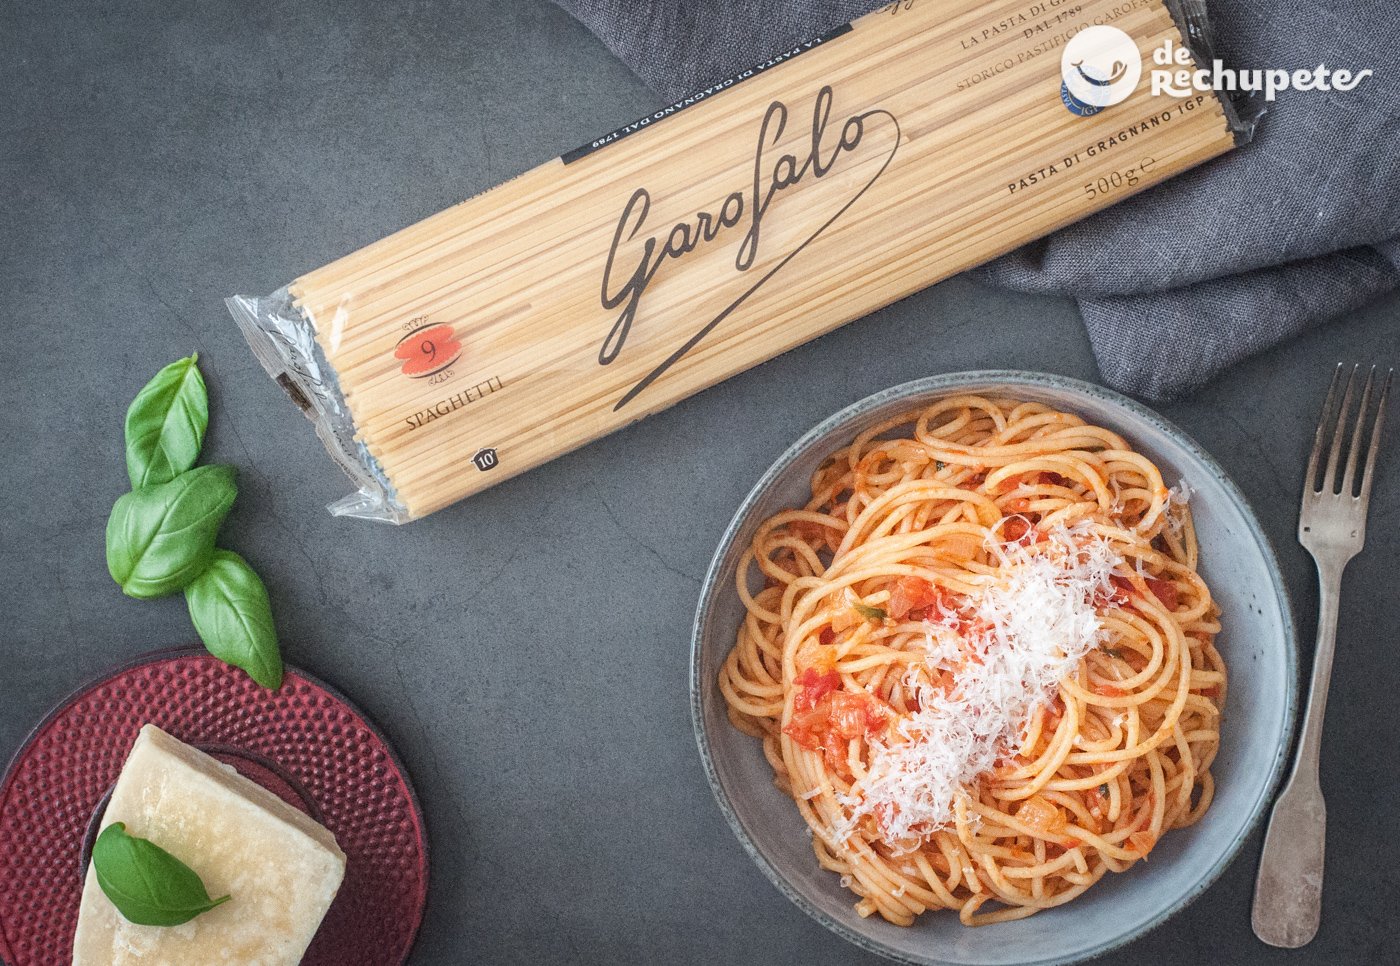 Cómo hacer pasta Napolitana. Spaghetti napolitana - De Rechupete